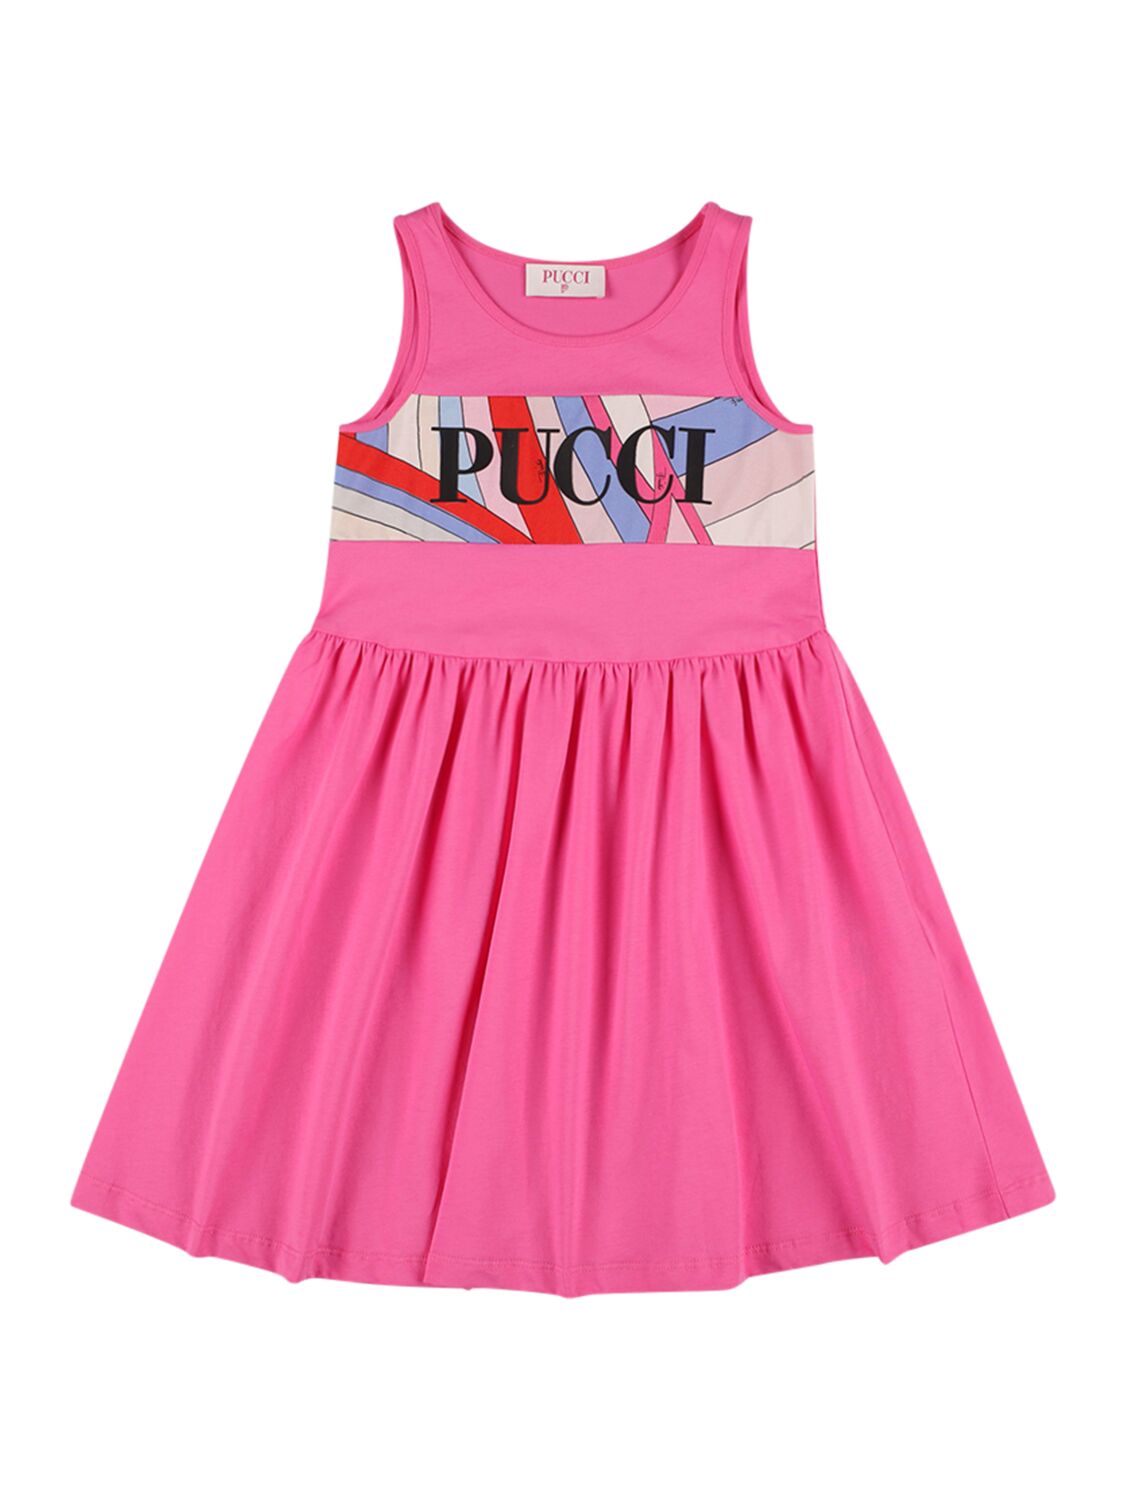 Pucci Kids' Logo Cotton Jersey Sleeveless Dress In Fuchsia